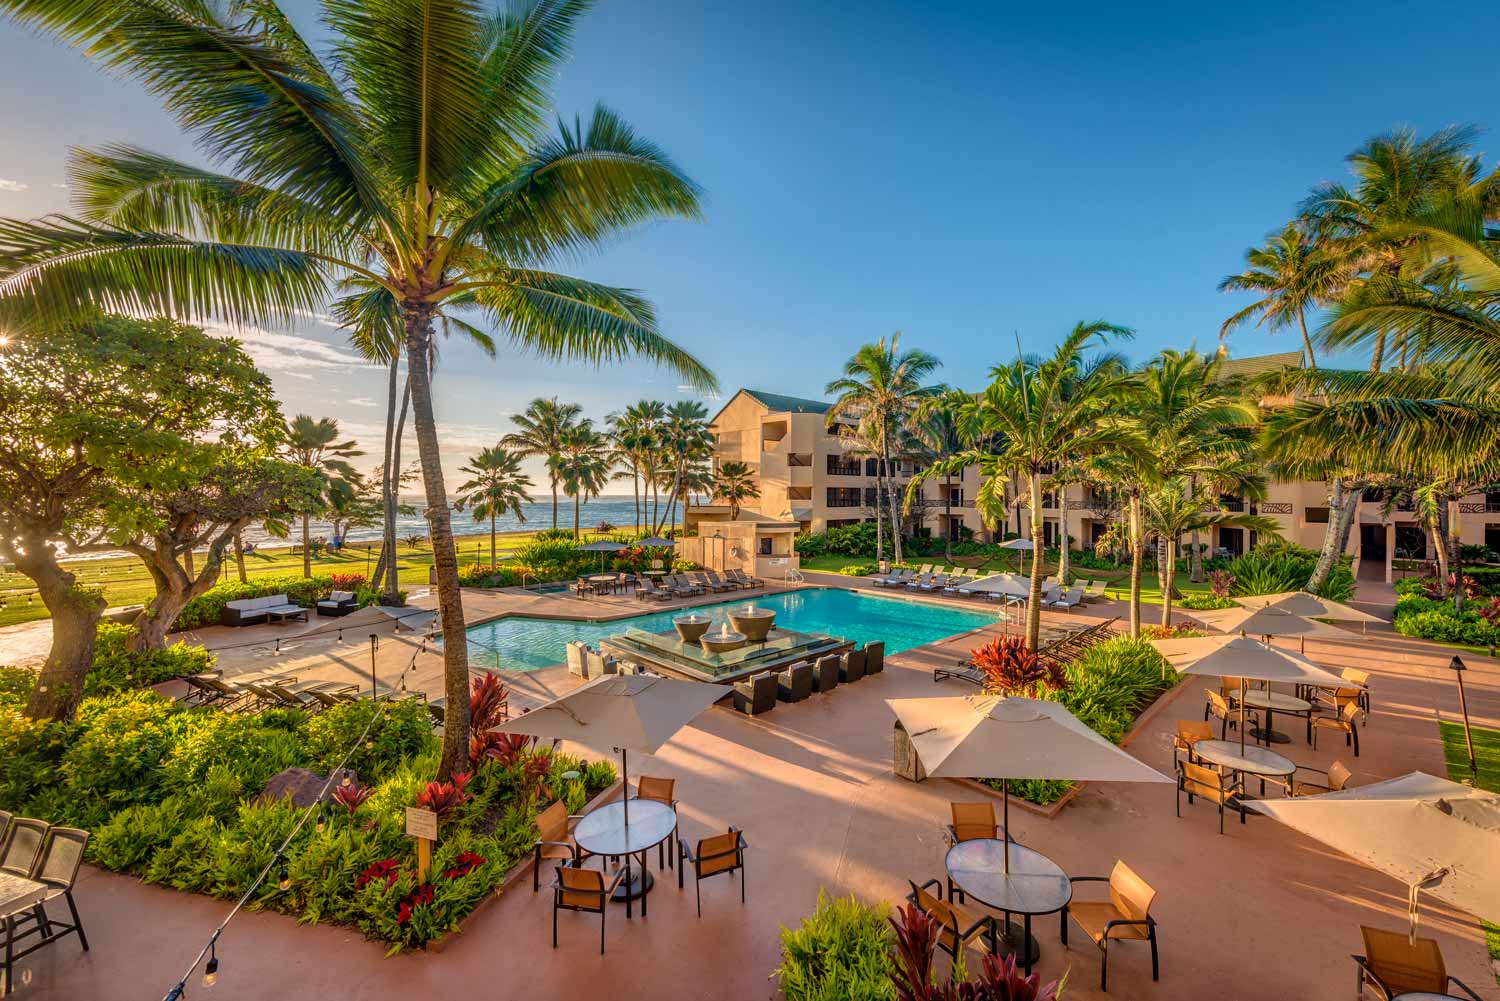 Cheap and Affordable Hotels in Kauai: Courtyard Kauai at Coconut Beach